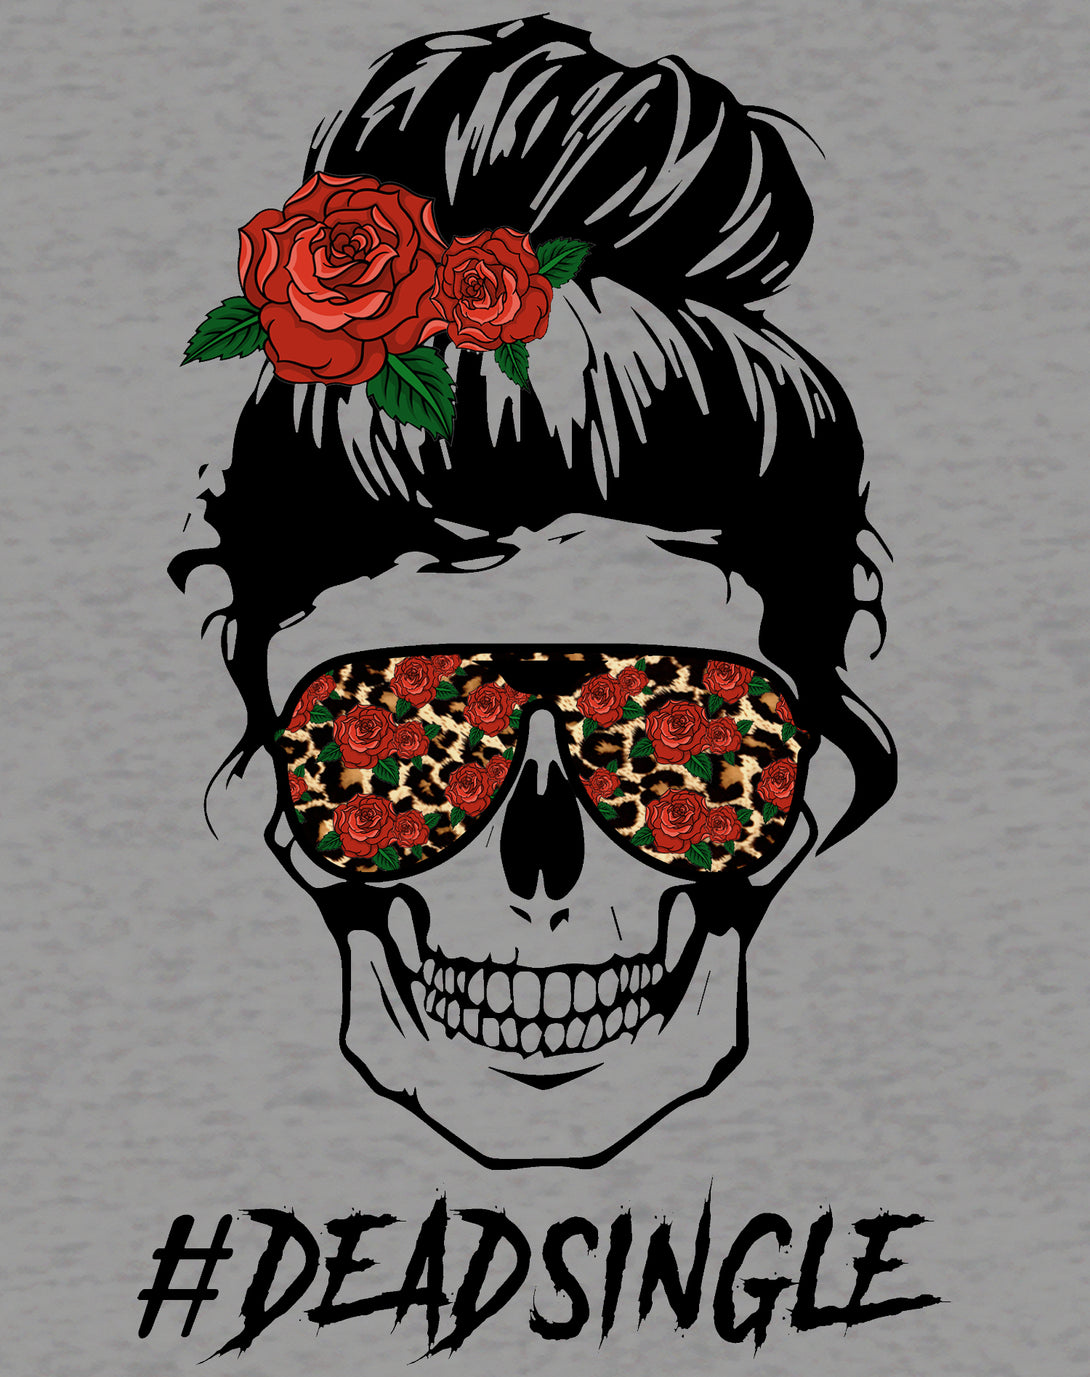 Valentine Graphic Rockabilly Rose & Wild Rock 'n' Roll Hearts Women's T-shirt Sports Grey - Urban Species Design Close Up